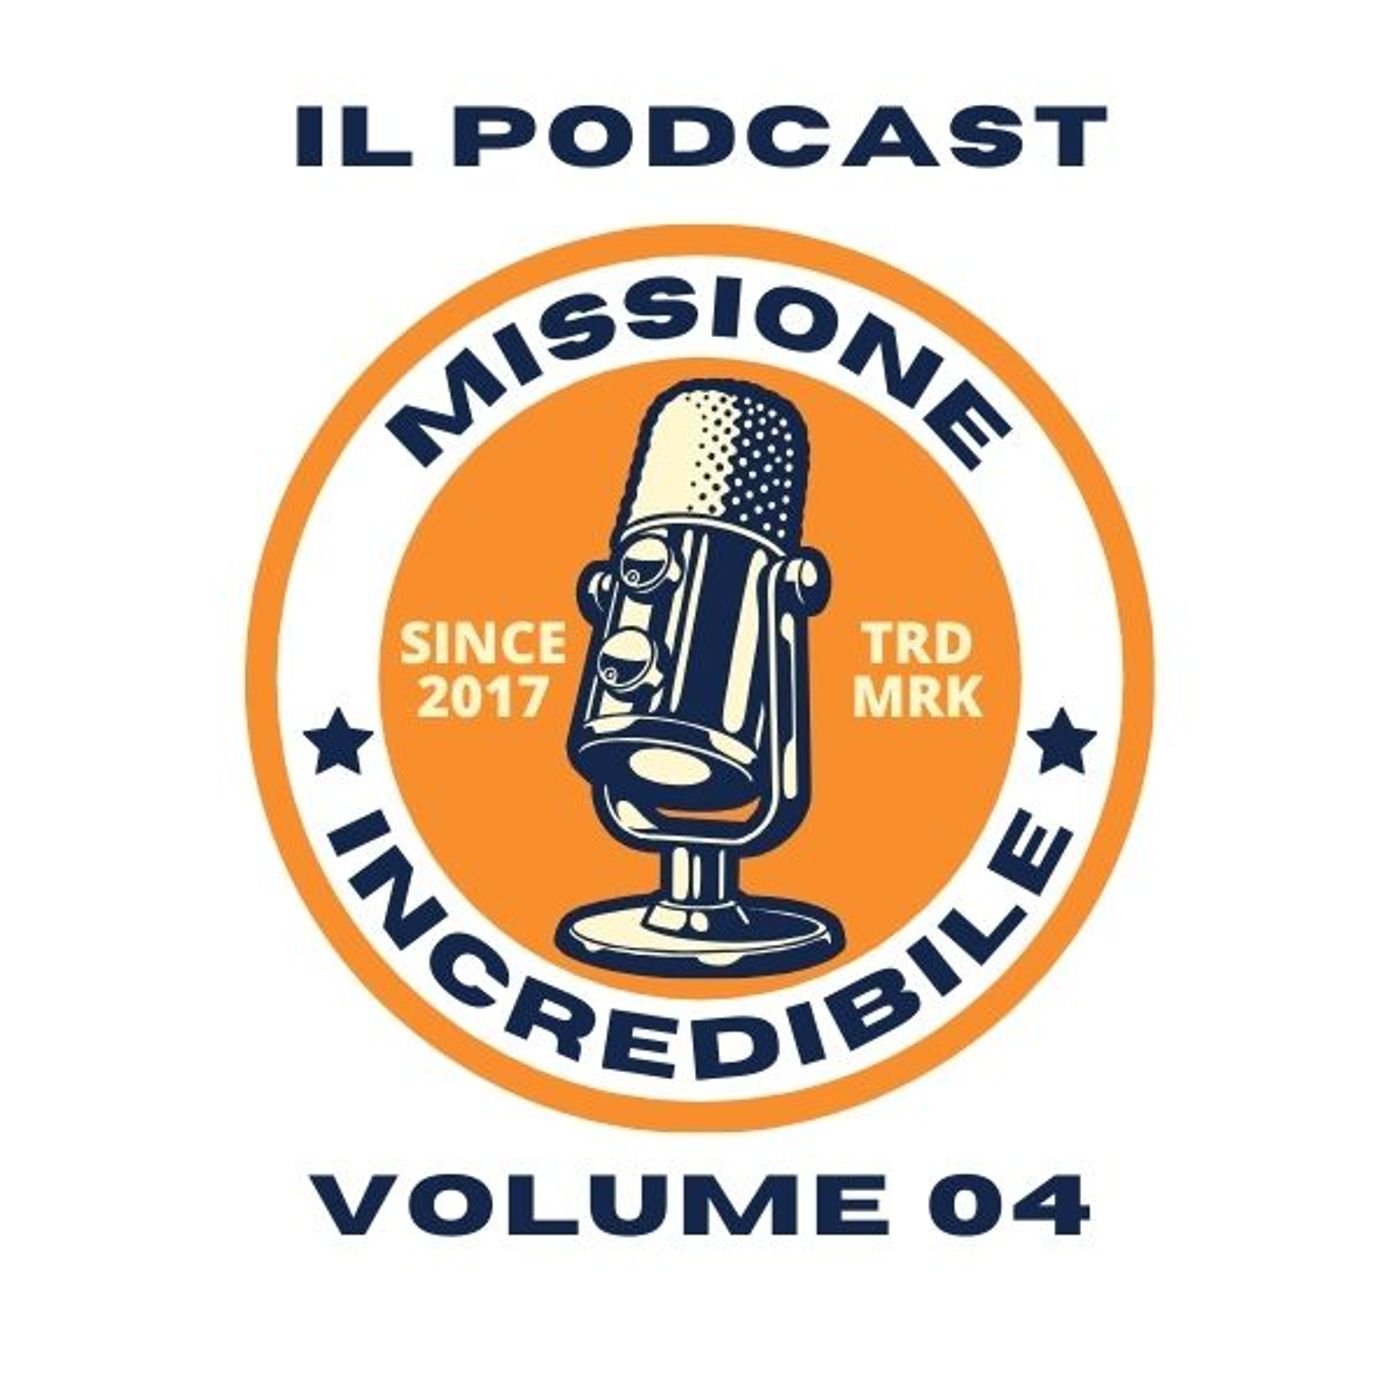 Missione Incredibile, il Podcast, Volume 04